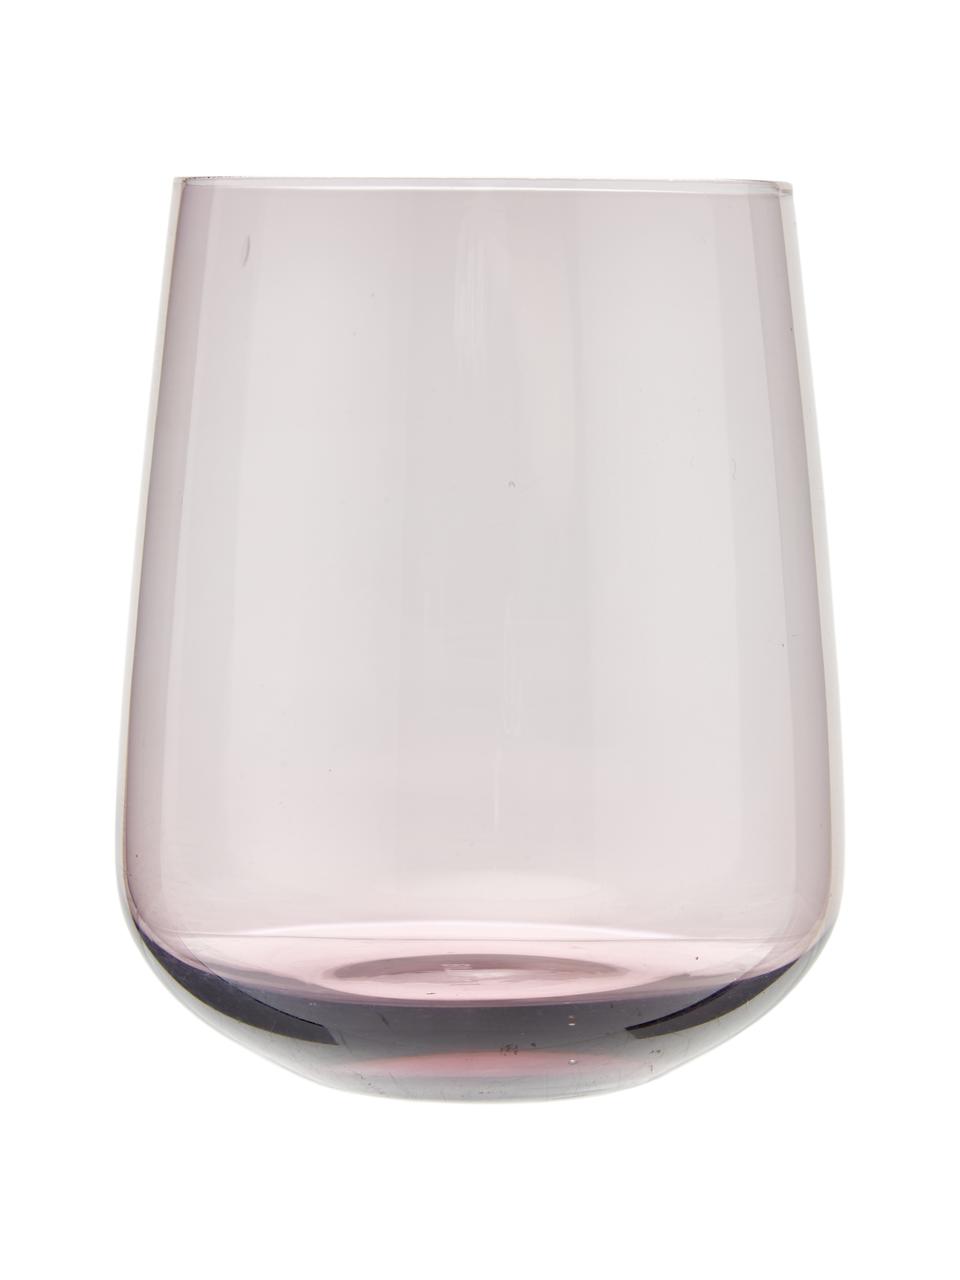 Mundgeblasene Wassergläser Diseguale in unterschiedlichen Farben und Formen, 6er-Set, Glas, mundgeblasen, Bunt, Ø 8 x H 10 cm, 200 ml